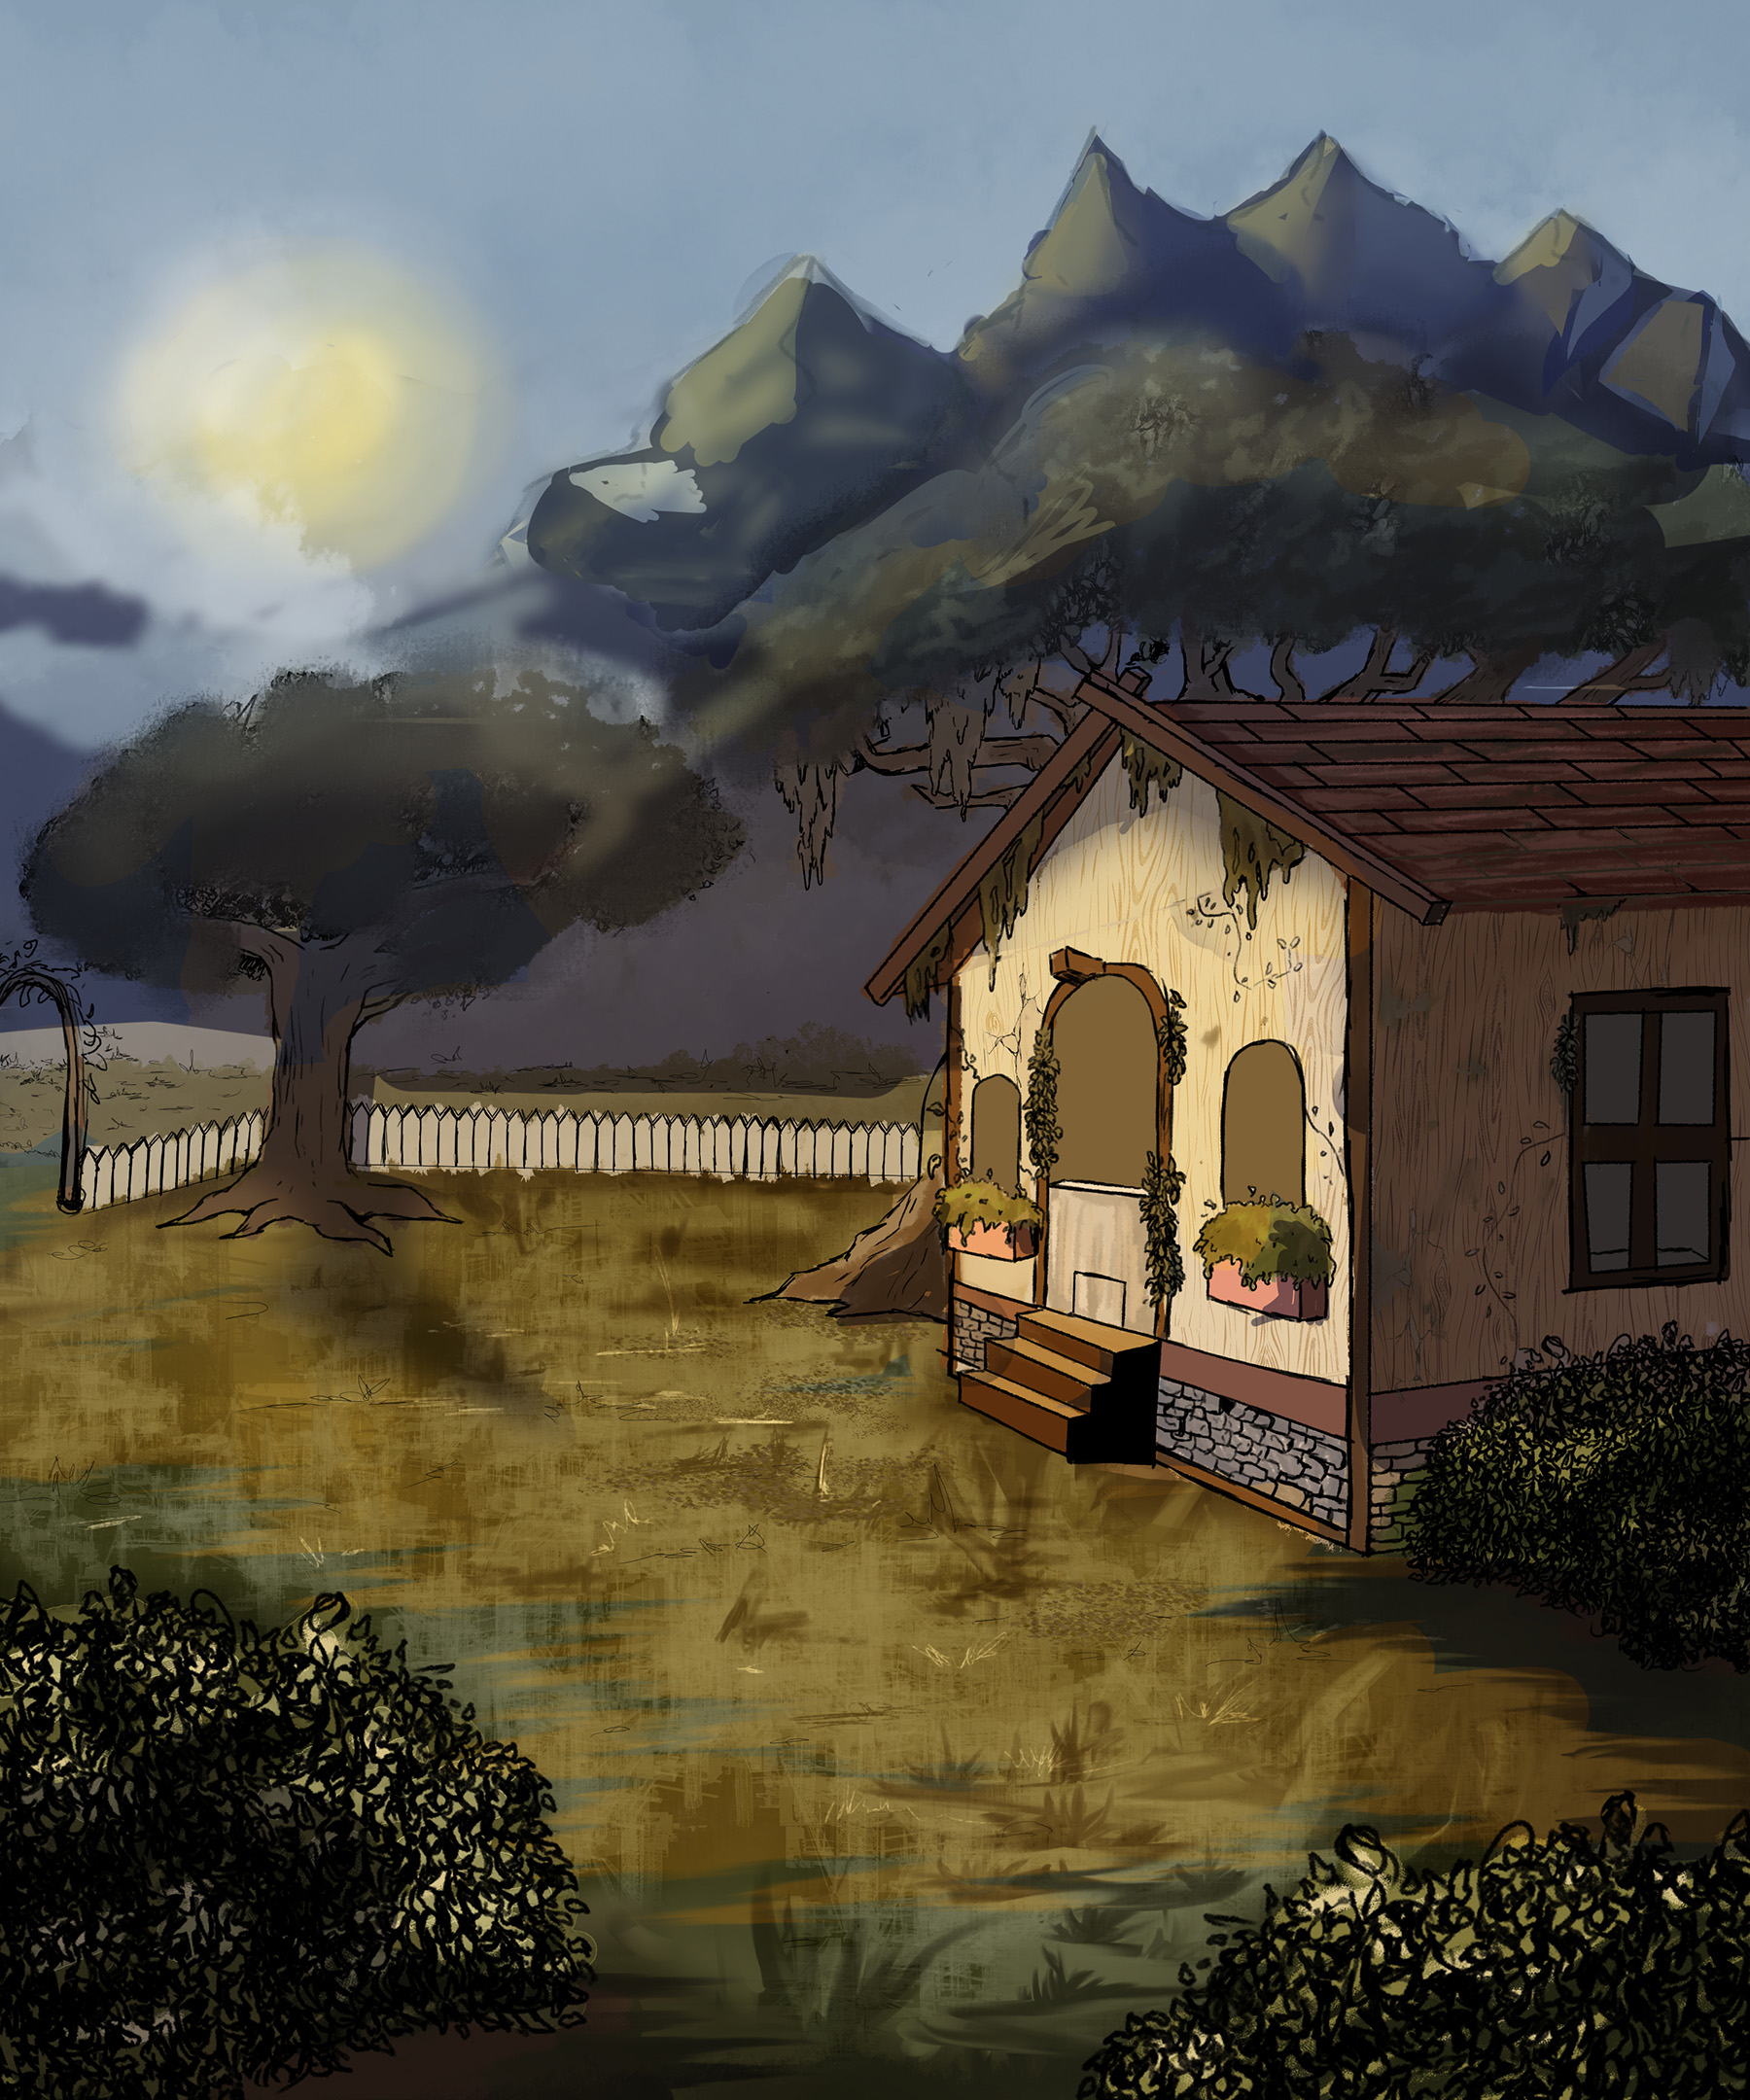 Still of an elf's cabin environment / Still of an elf's cabin environment, created using Clip Studio Paint